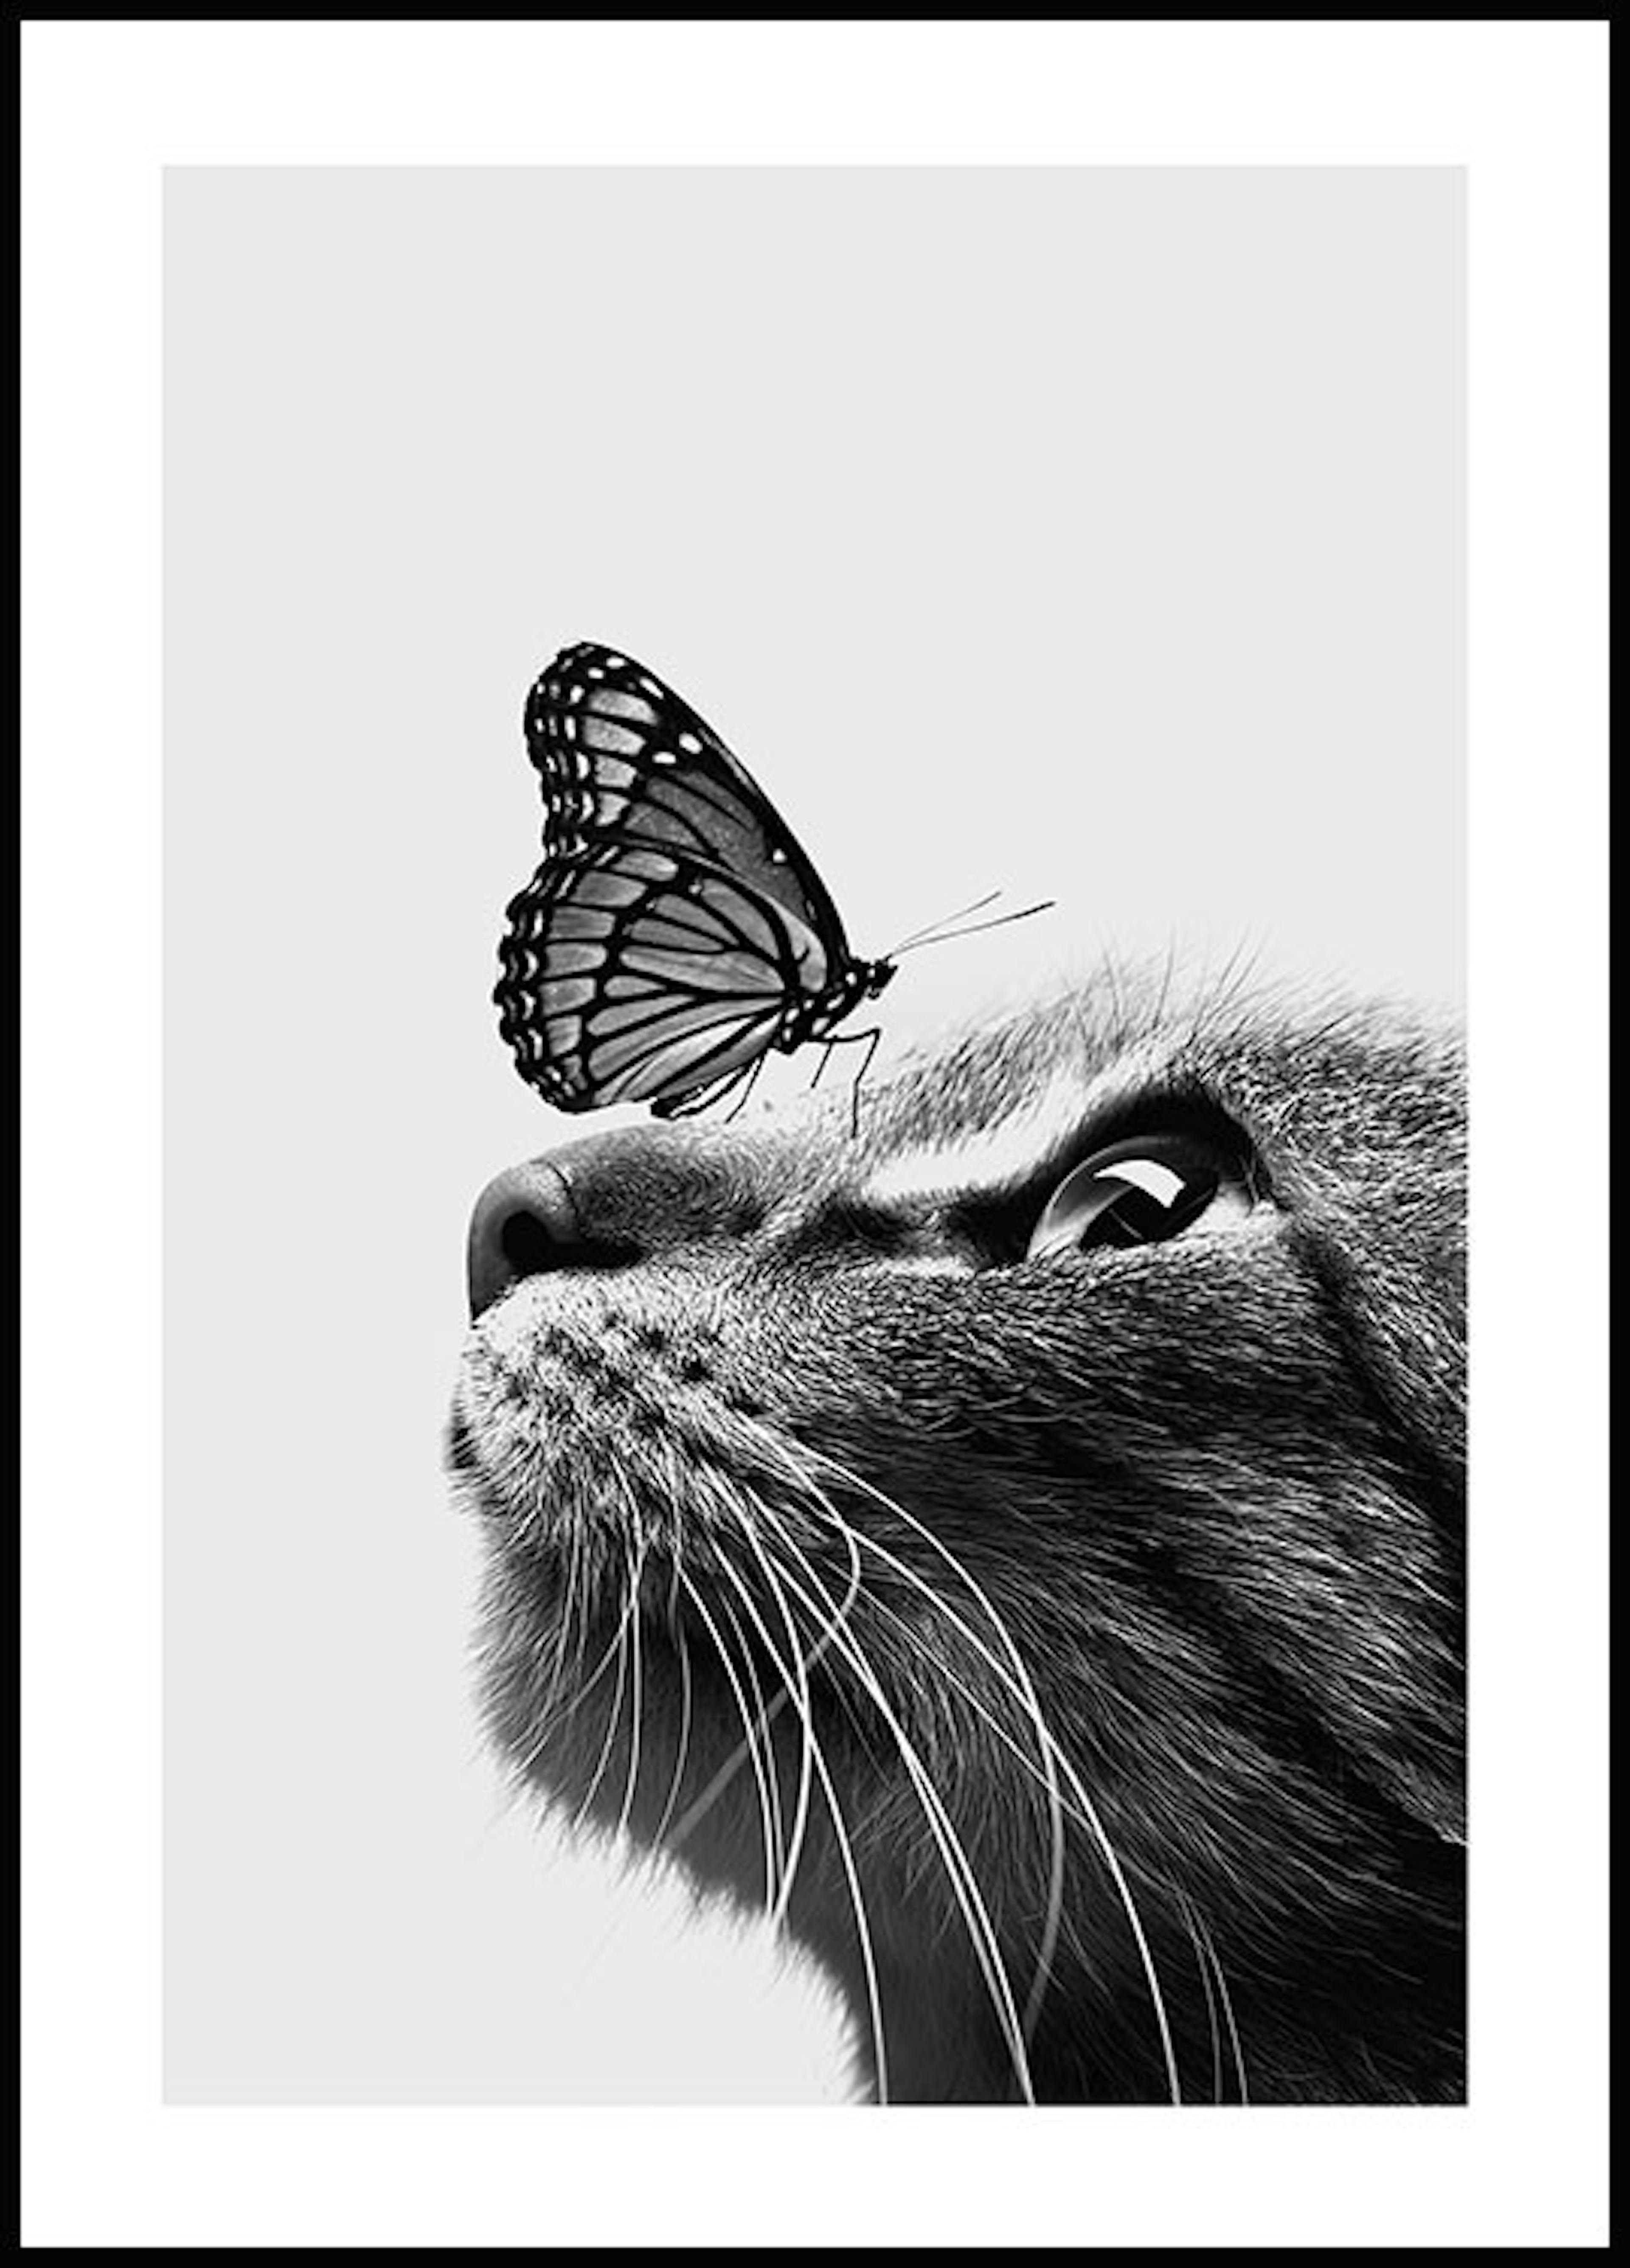 لوحة لصورة القطة والفراشة 0